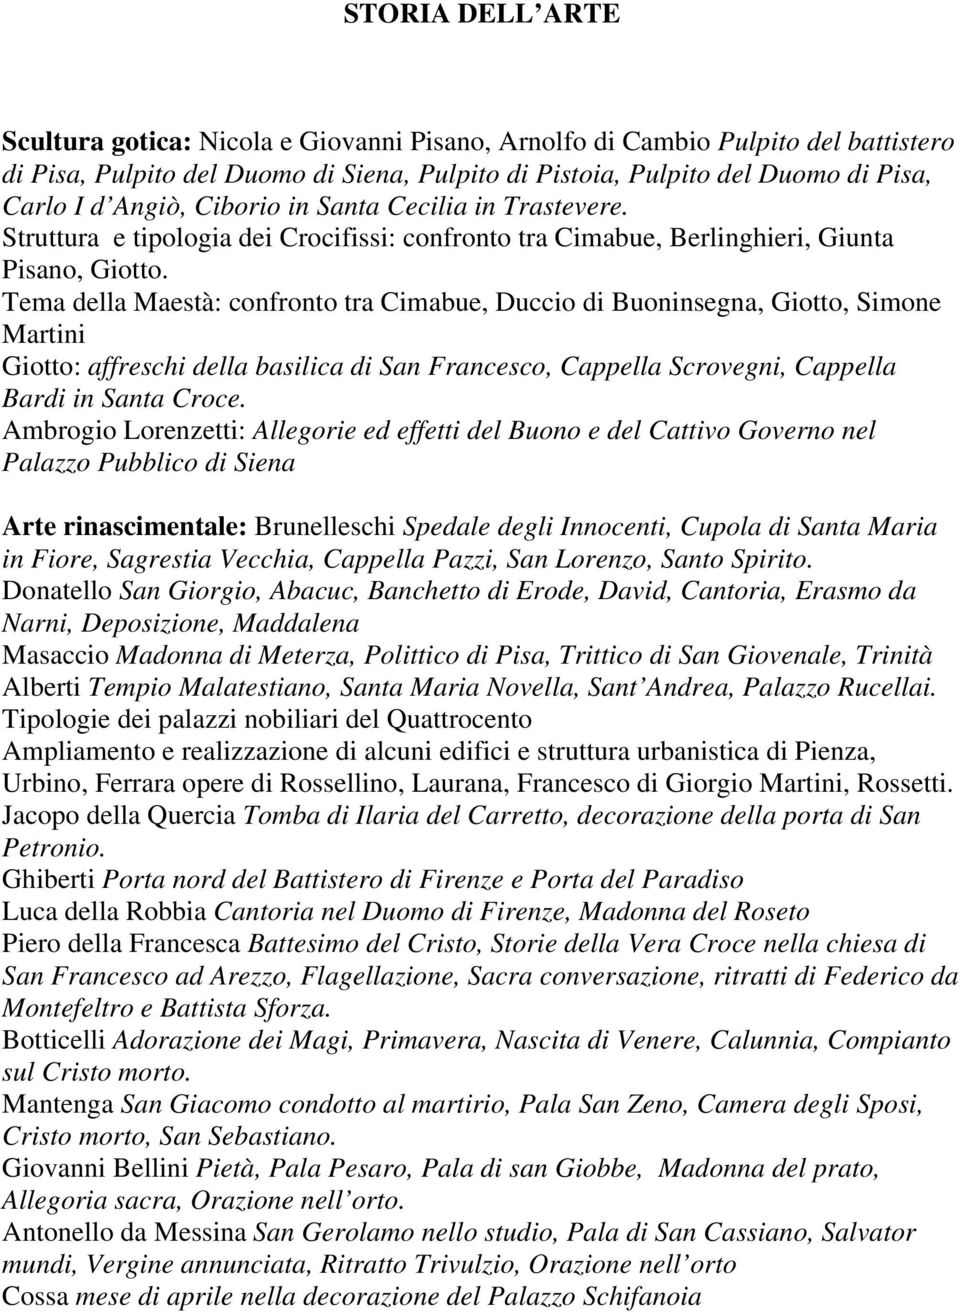 Tema della Maestà: confronto tra Cimabue, Duccio di Buoninsegna, Giotto, Simone Martini Giotto: affreschi della basilica di San Francesco, Cappella Scrovegni, Cappella Bardi in Santa Croce.